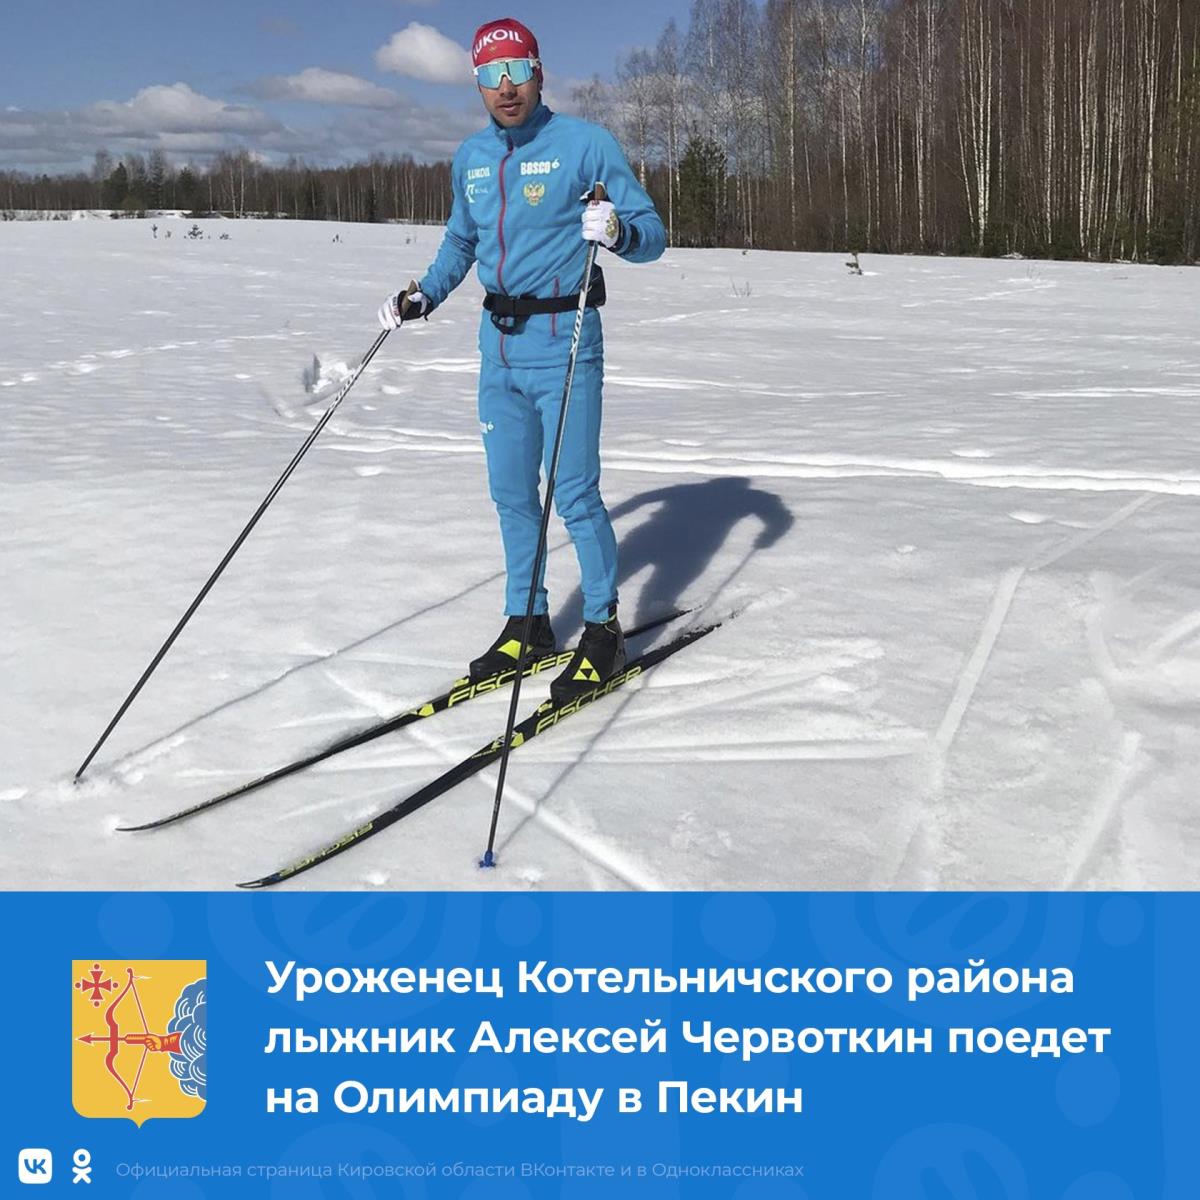 Кировчанин поедет на Олимпиаду